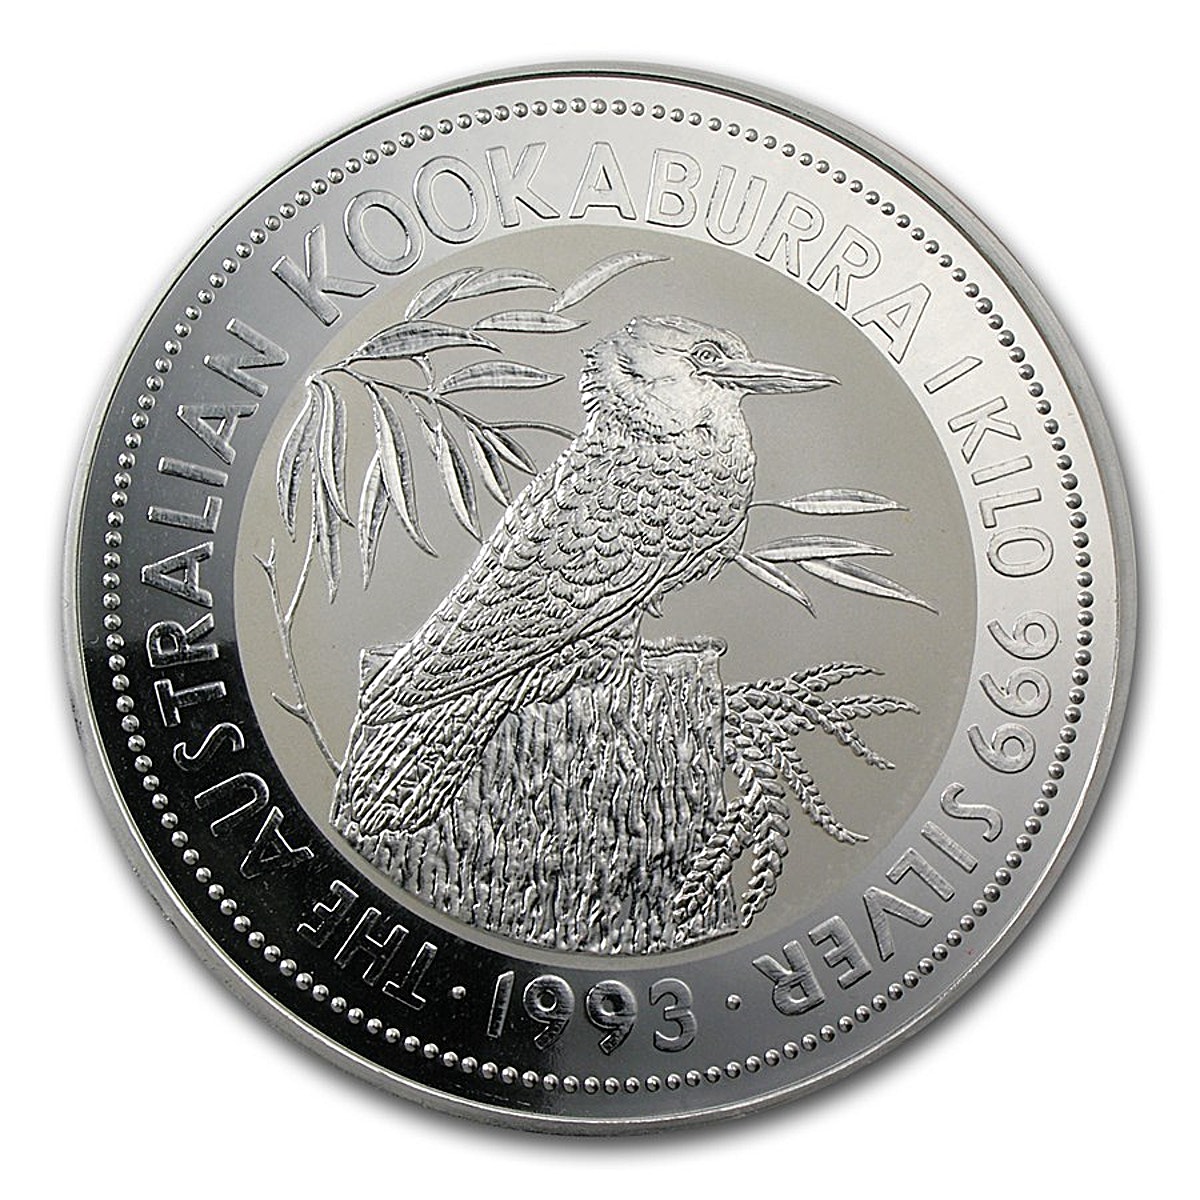 1 доллар монета серебро. Серебряные монеты Австралии Кукабарра. Монета Кукабарра Австралия серебро. Монета 30 долларов Австралия. Серебряная монета Австралии "Кукабарра. 30 Лет выпуска" 2020.